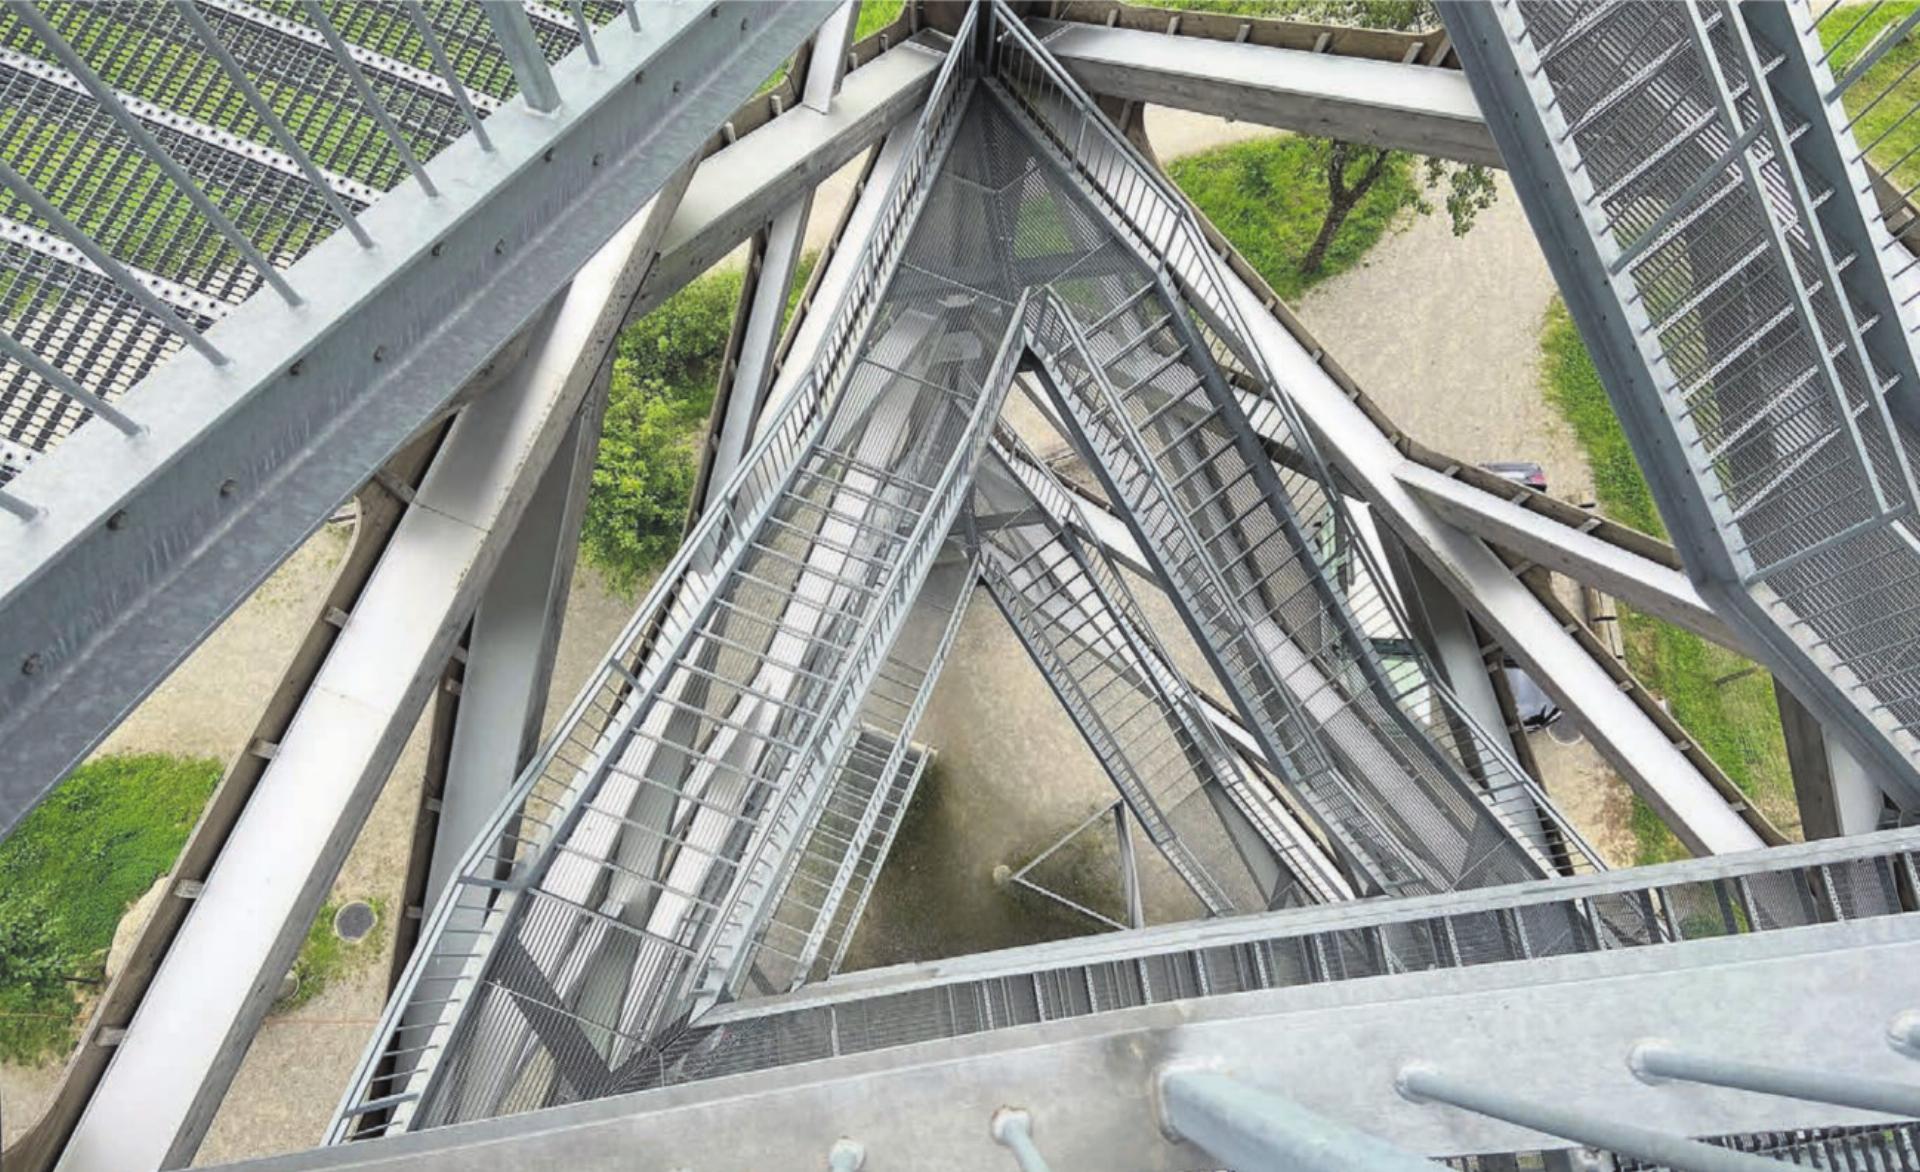 Faszinierender Blick nach unten. Die Treppenelemente bestehen aus Stahl, der Rest aus Schweizer Holz. Er wurde 2021 erbaut und bildet den Höhepunkt im Naherholungsgebiet Hasenberg, einem beliebten Ausflugsziel für die ganze Region. Der Aufstieg ist für Besucher gratis. Bild: Sabrina Salm